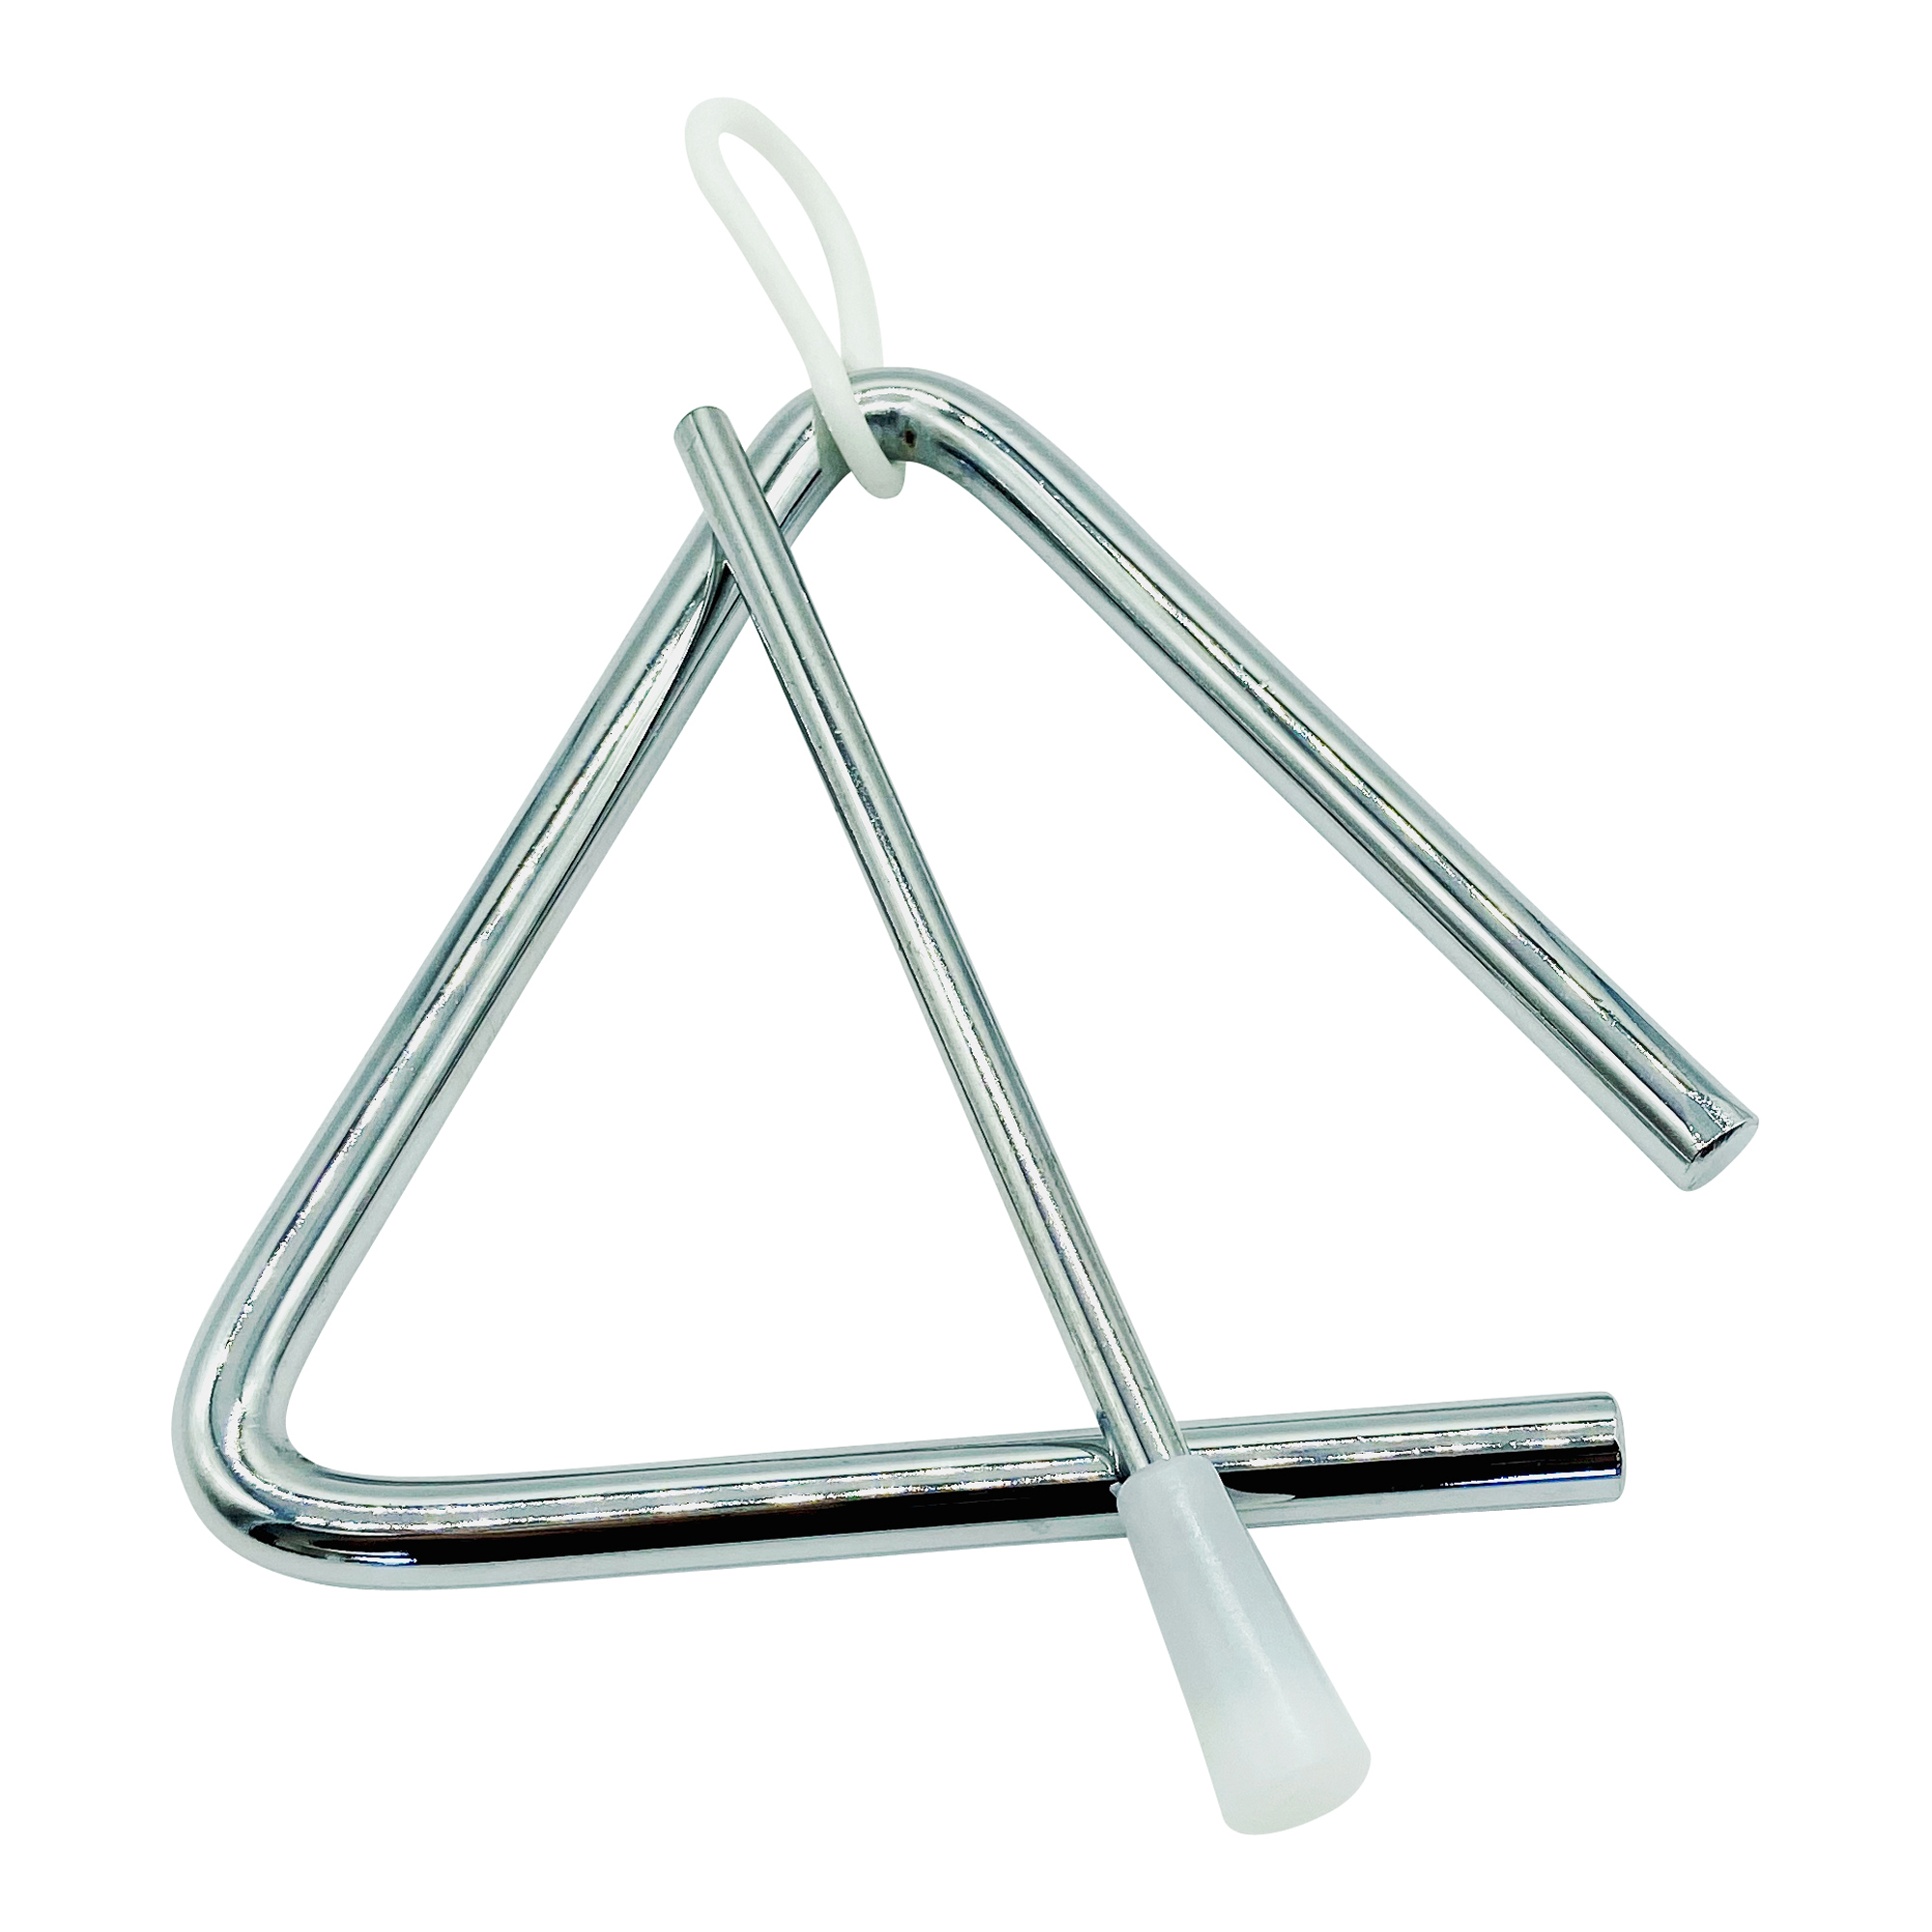 GICO Kinder Triangel aus Metall klein 10 x 10 cm mit Klöppel Schlaginstrument - 3869…